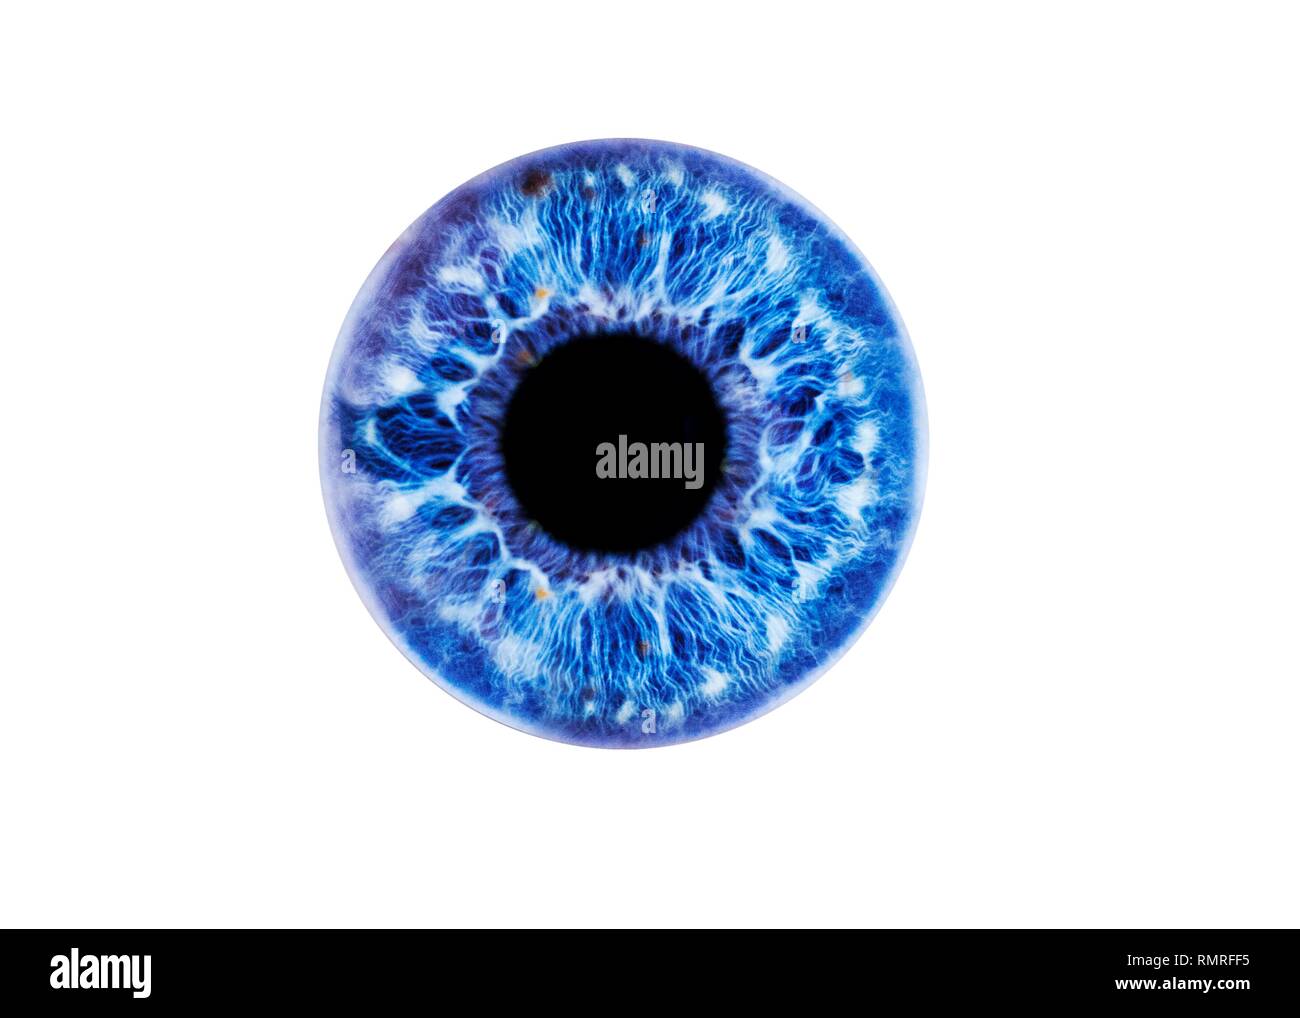 Œil humain montrant close-up of blue iris et pupille. La couleur de l'iris, un anneau musculaire, régule la quantité de lumière qui pénètre dans l'oeil. Banque D'Images